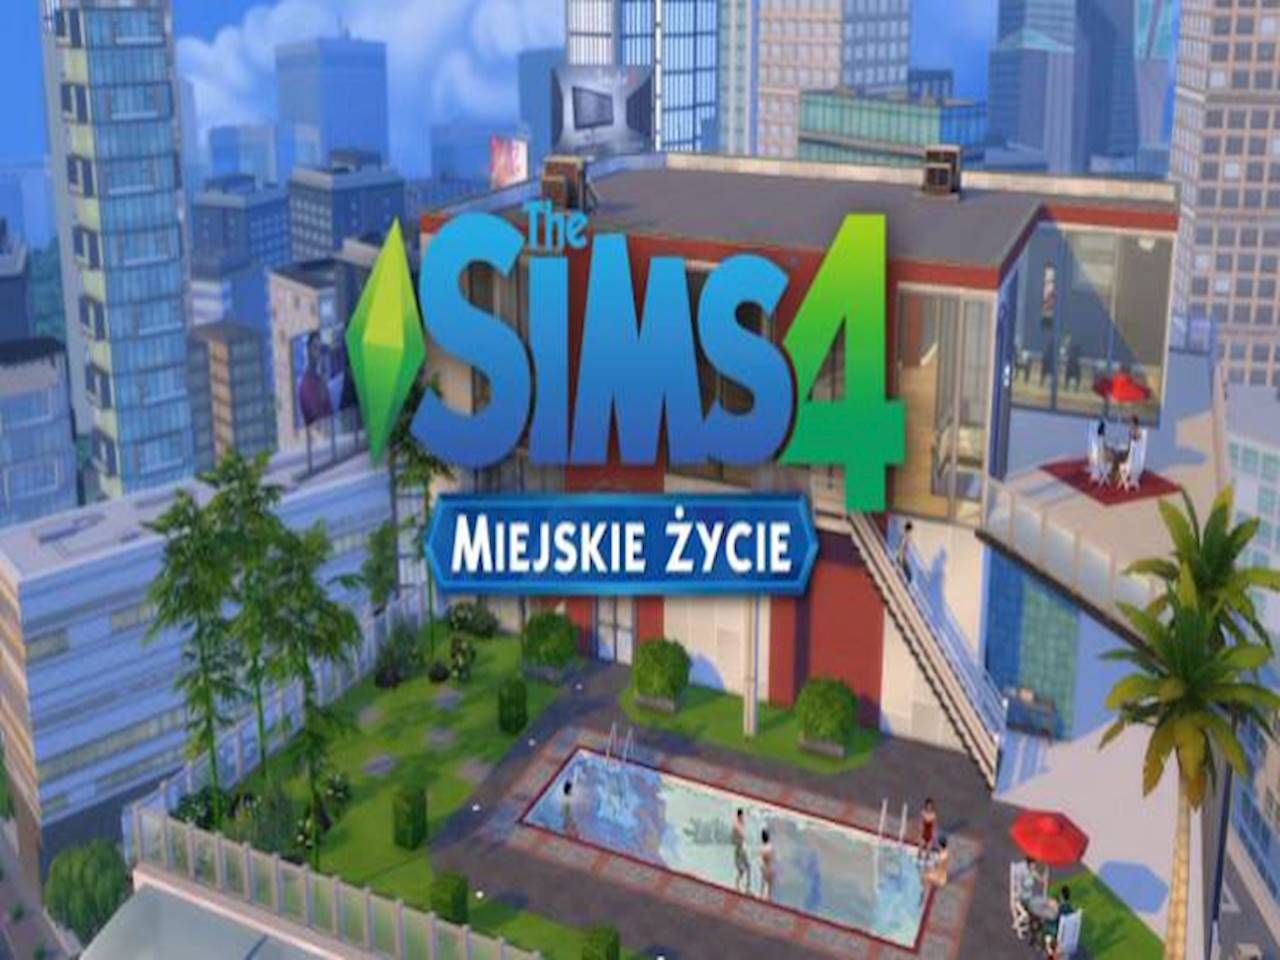 Gdzie Kupic Plazme The Sims 4 Przeprowadzka do miasta, czyli recenzja The Sims 4: Miejskie Życie